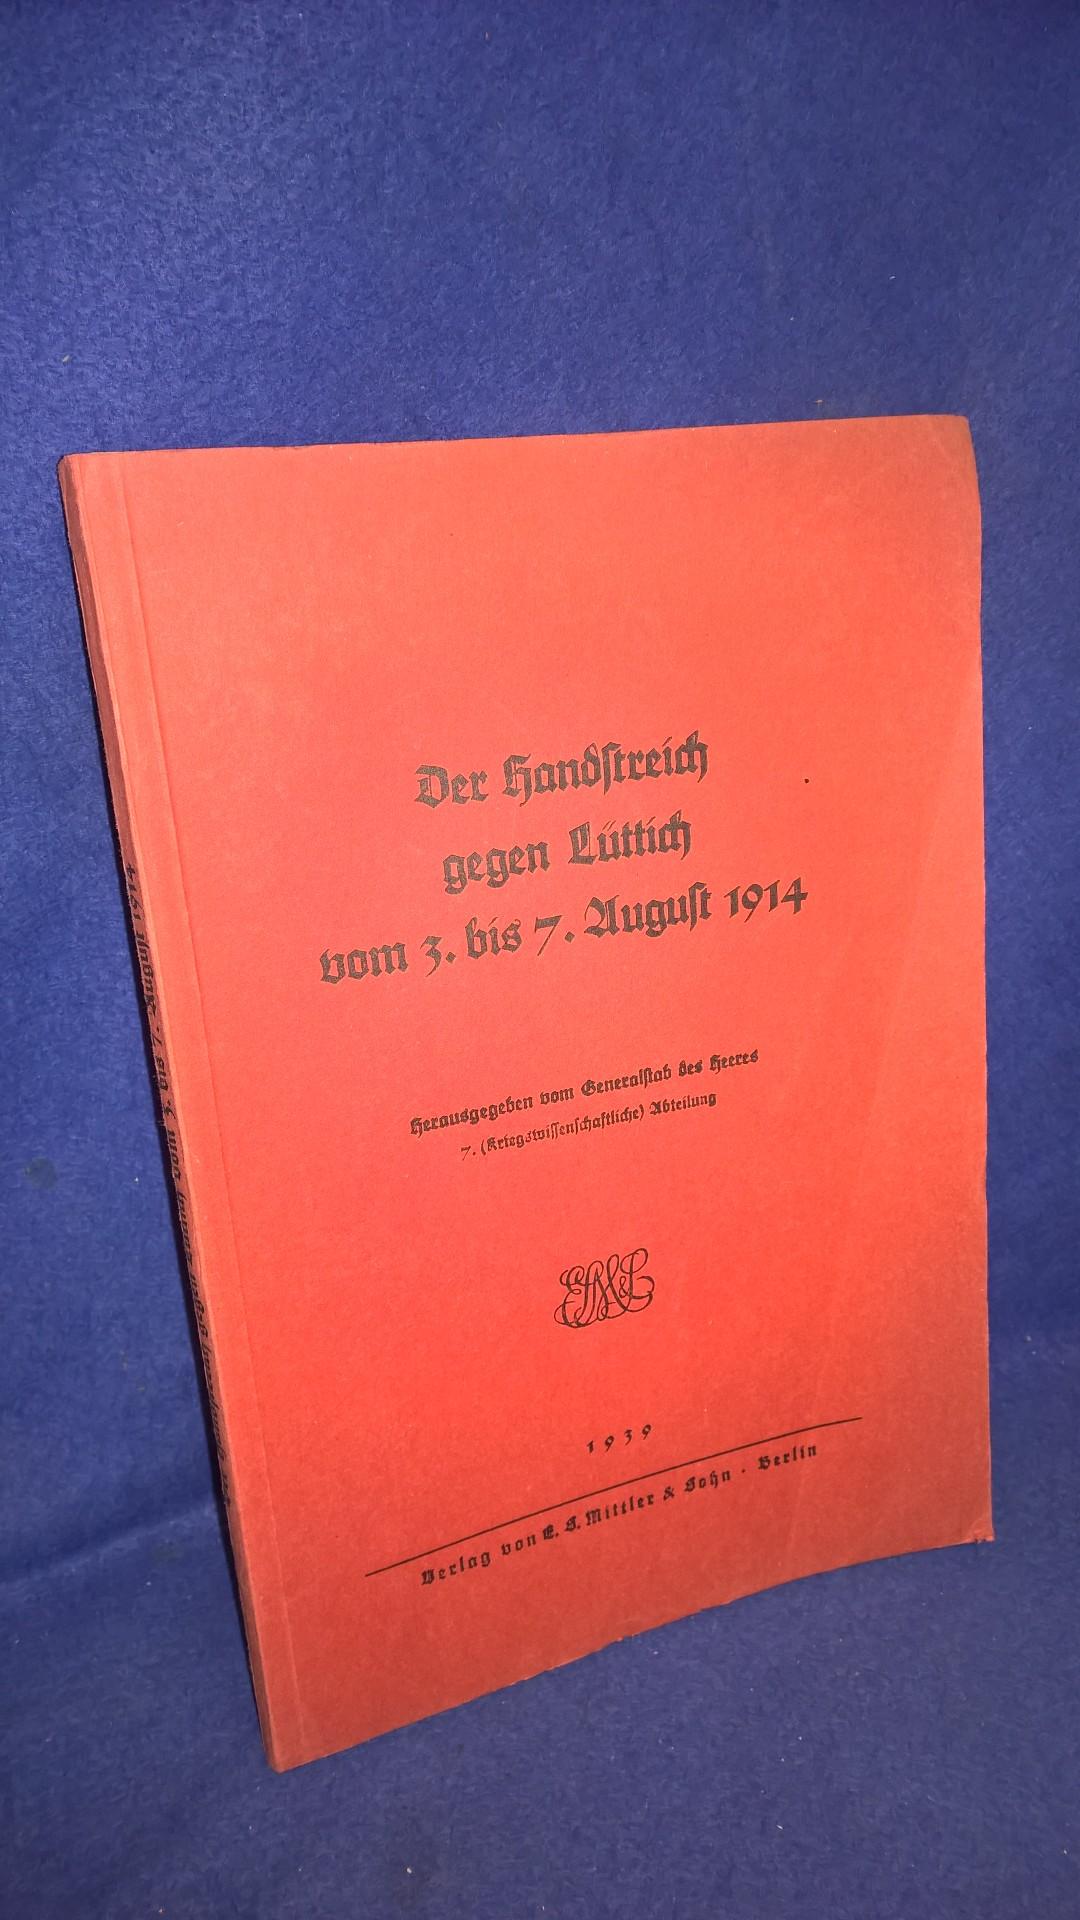 Der Handstreich gegen Lüttich vom 3. - 7. August 1914 - ausgearbeitet vom Generalstabe des Heeres - 